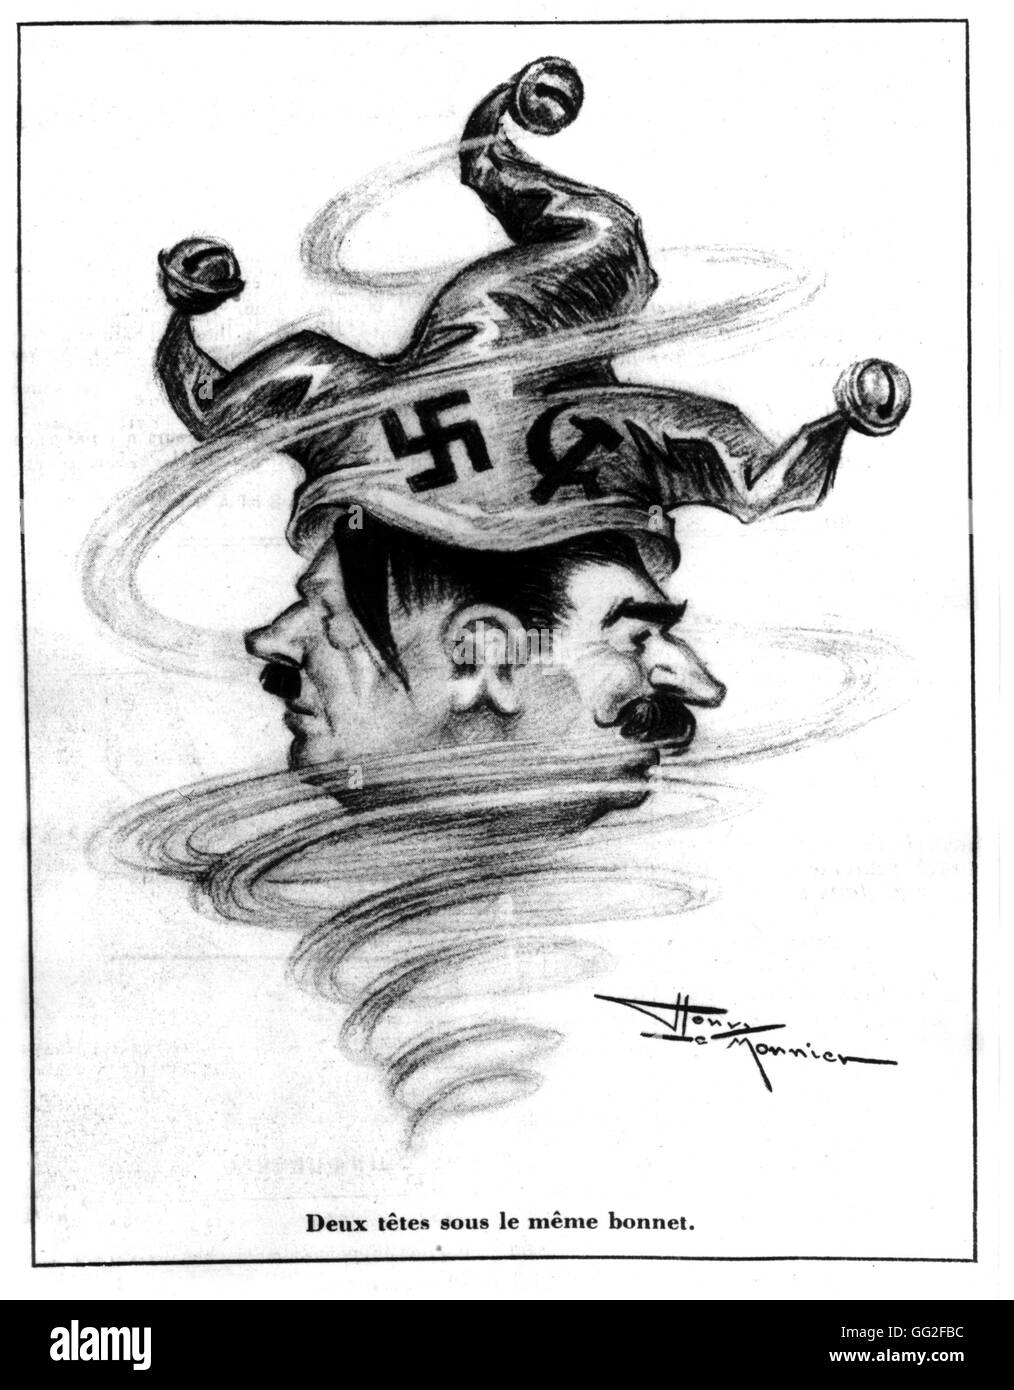 Vignetta satirica da Henri Le Monnier, pubblicato in 'Marianne': due teste sotto il tappo stesso. Hitler e Stalin Dicembre 13, 1939 FRANCIA - SECONDA GUERRA MONDIALE Foto Stock